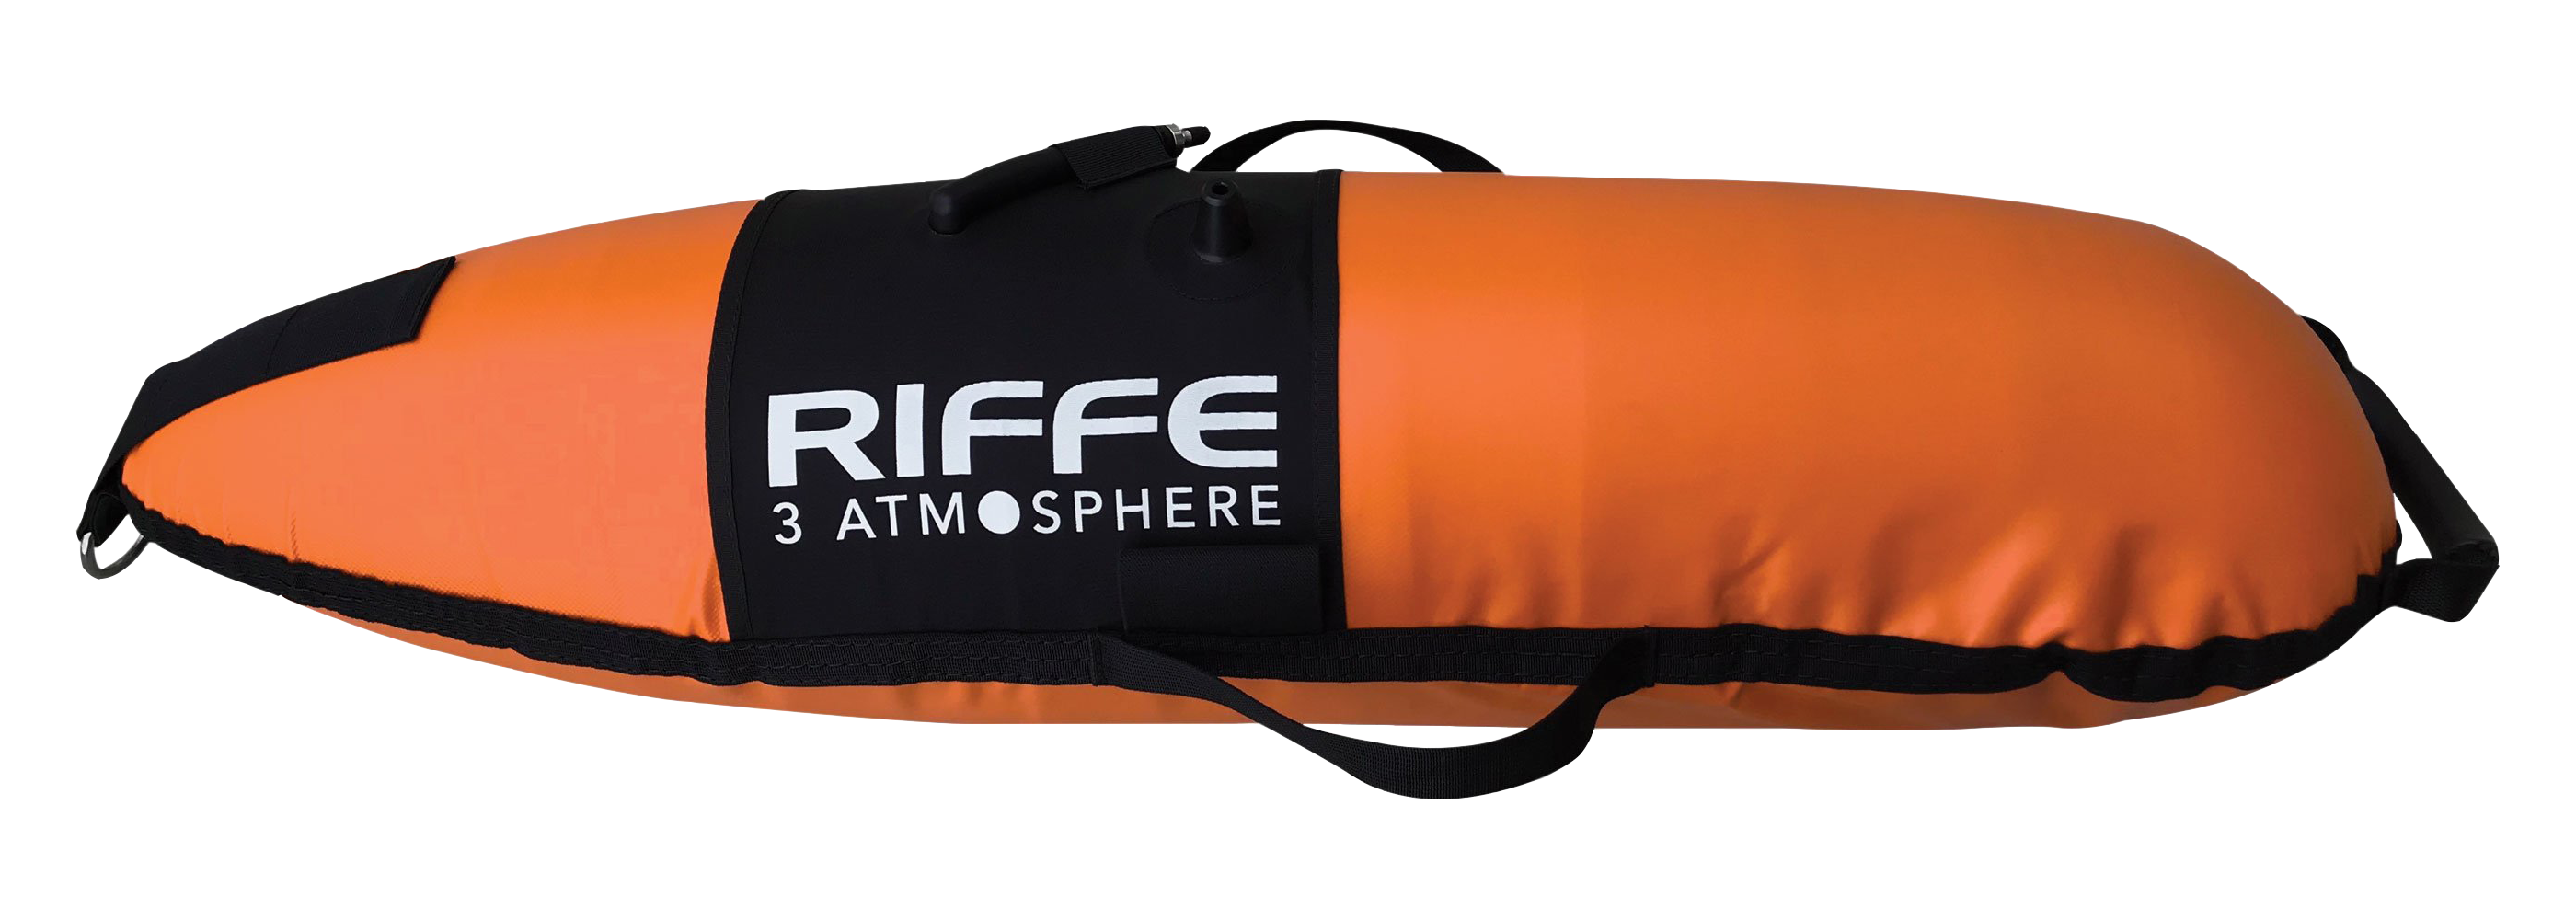 Riffe 3 Atmosphere Torpedo Float